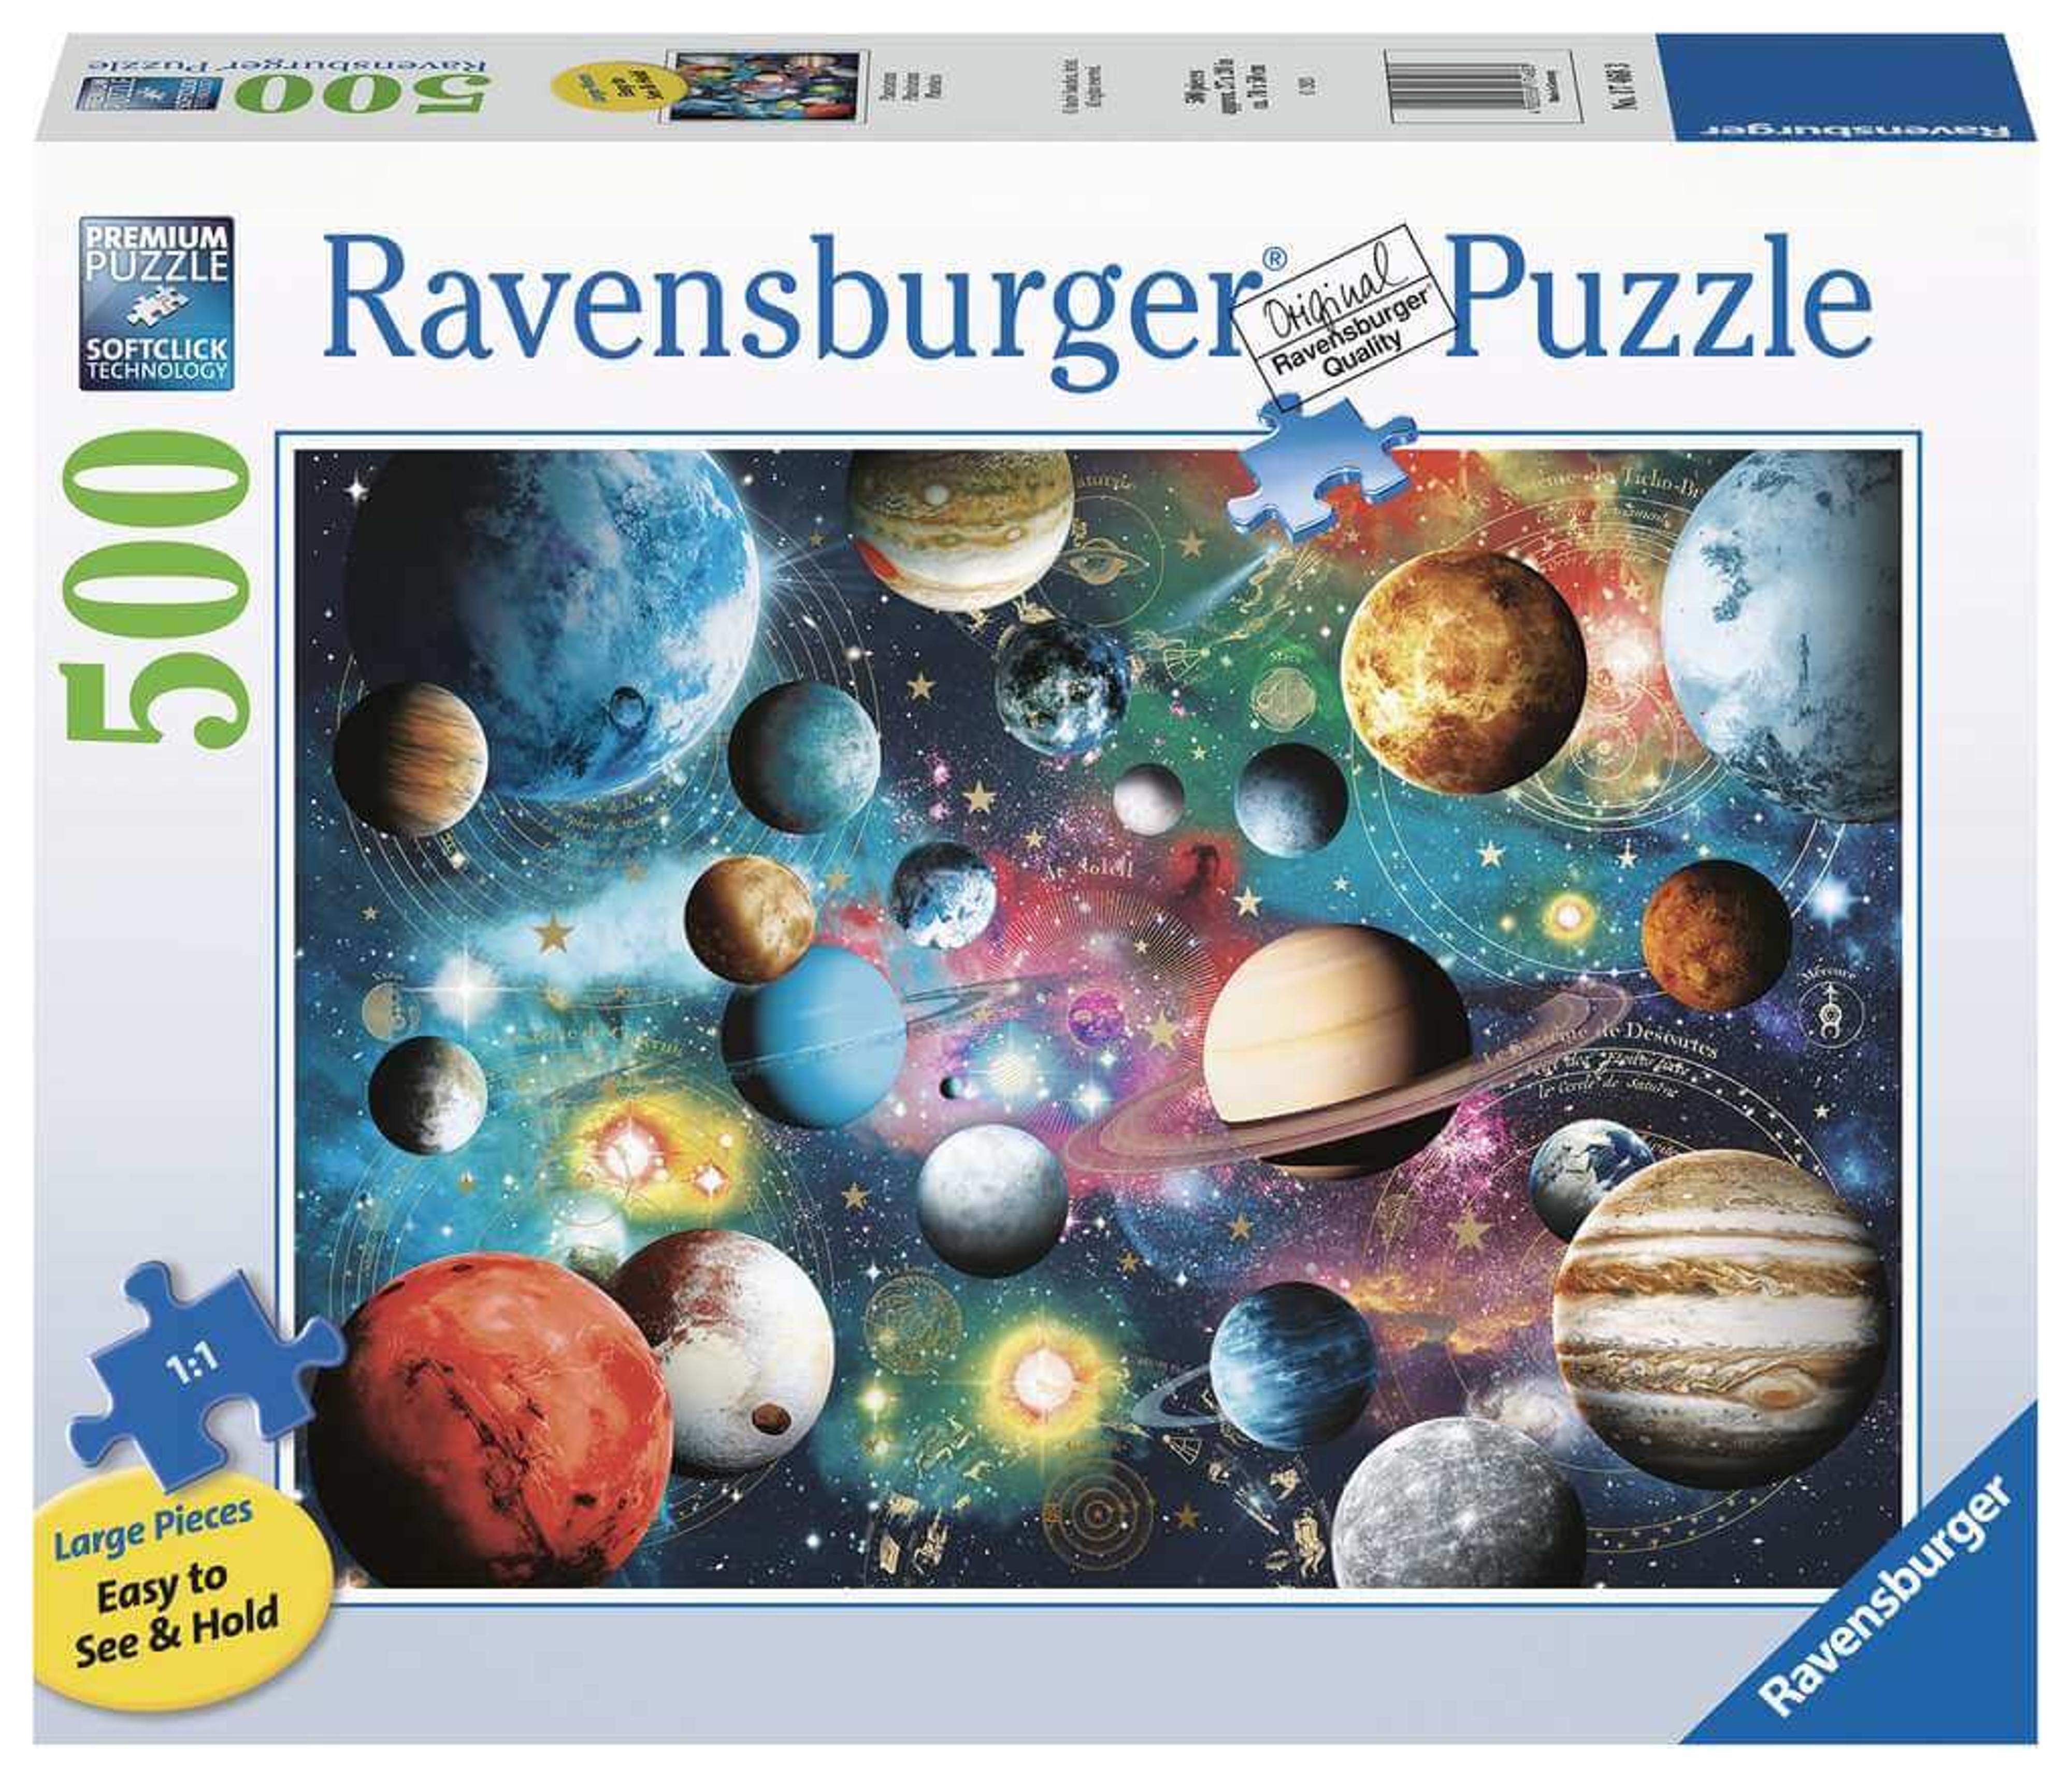 Ravensburger Planetarium 500pc Puzzle (Large Pieces Style)